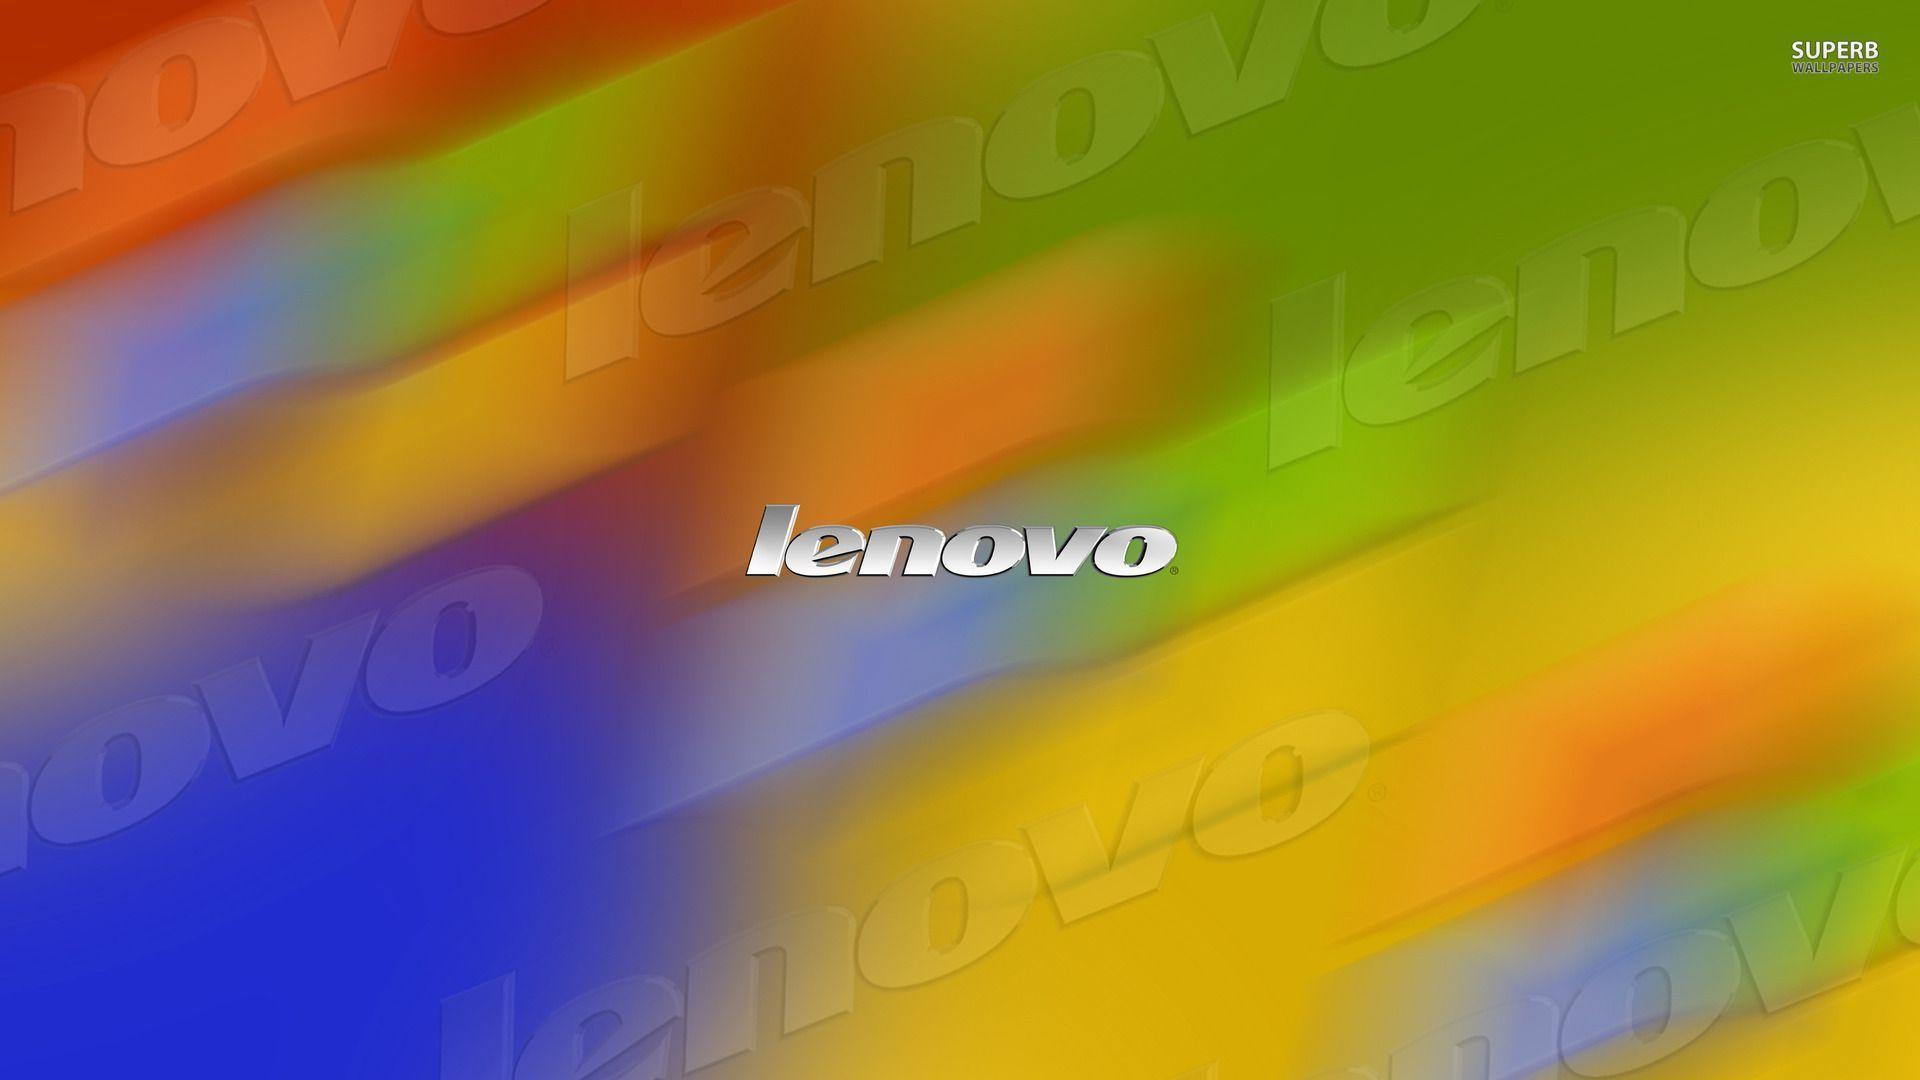 Lenovo HD Wallpapers - Top Free Lenovo